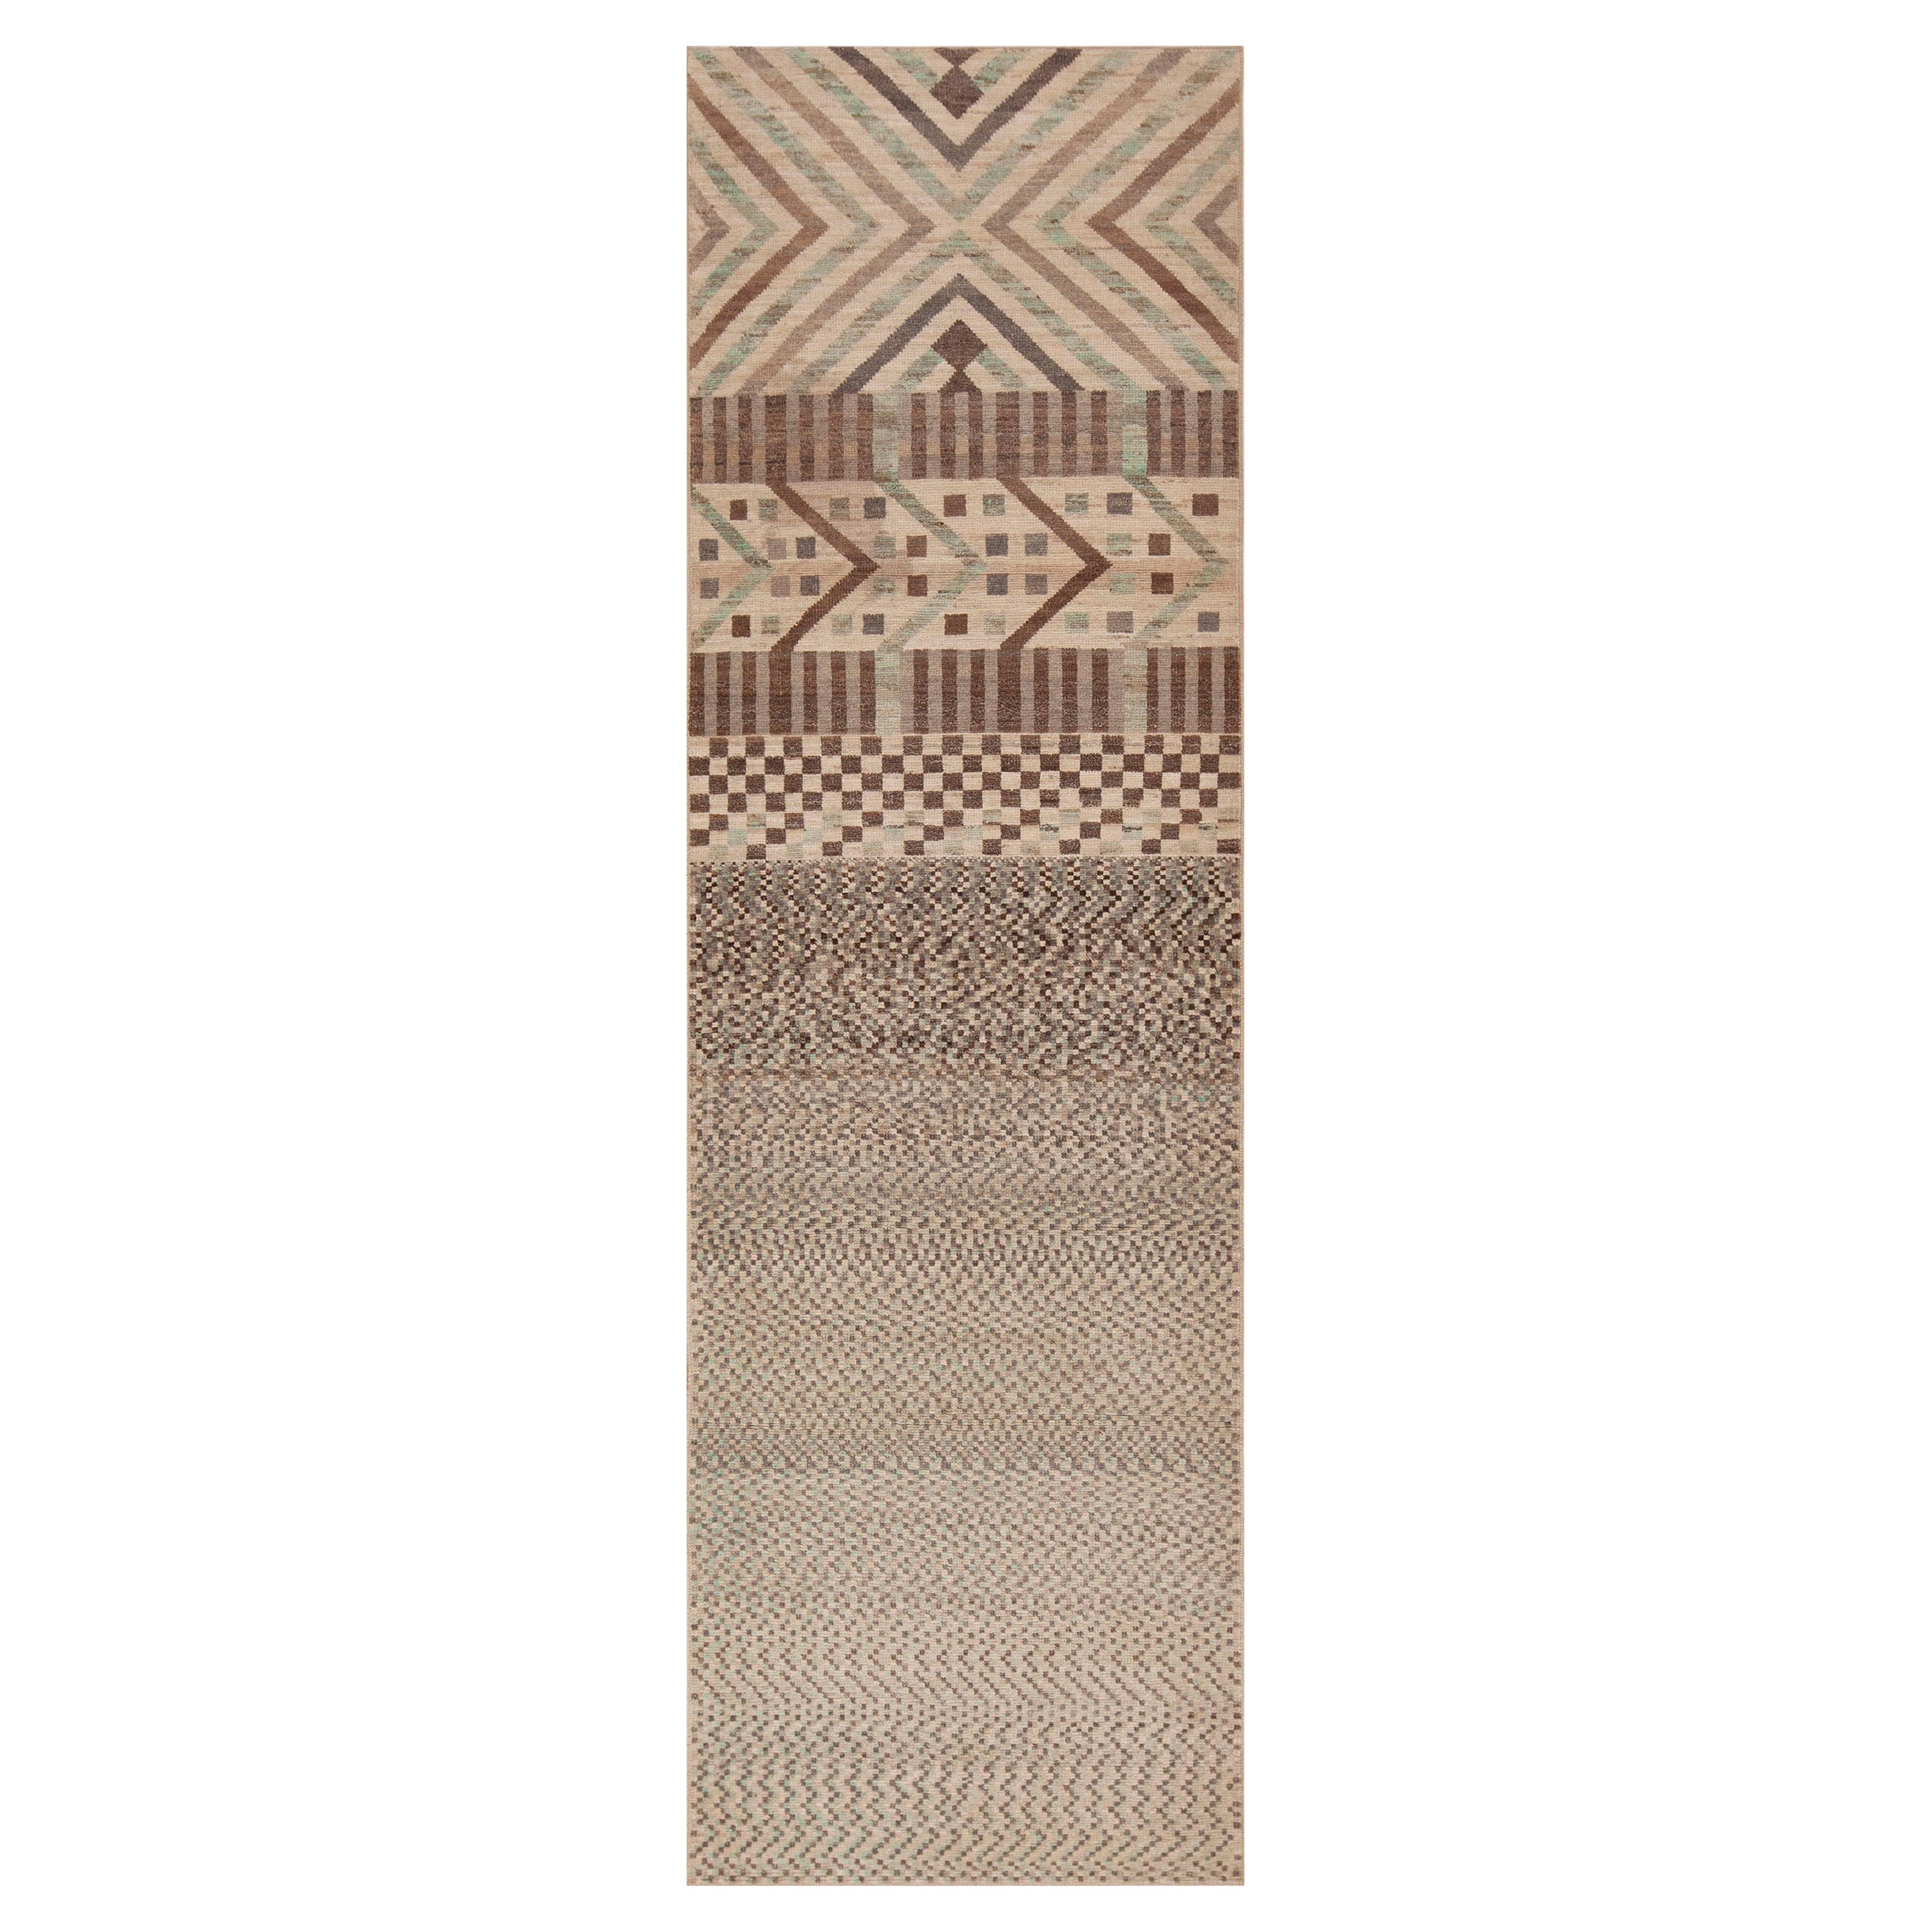 Artistic Tribal Geometric Neutral Light Color Modern Runner Rug 3' x 9'8" For Sale